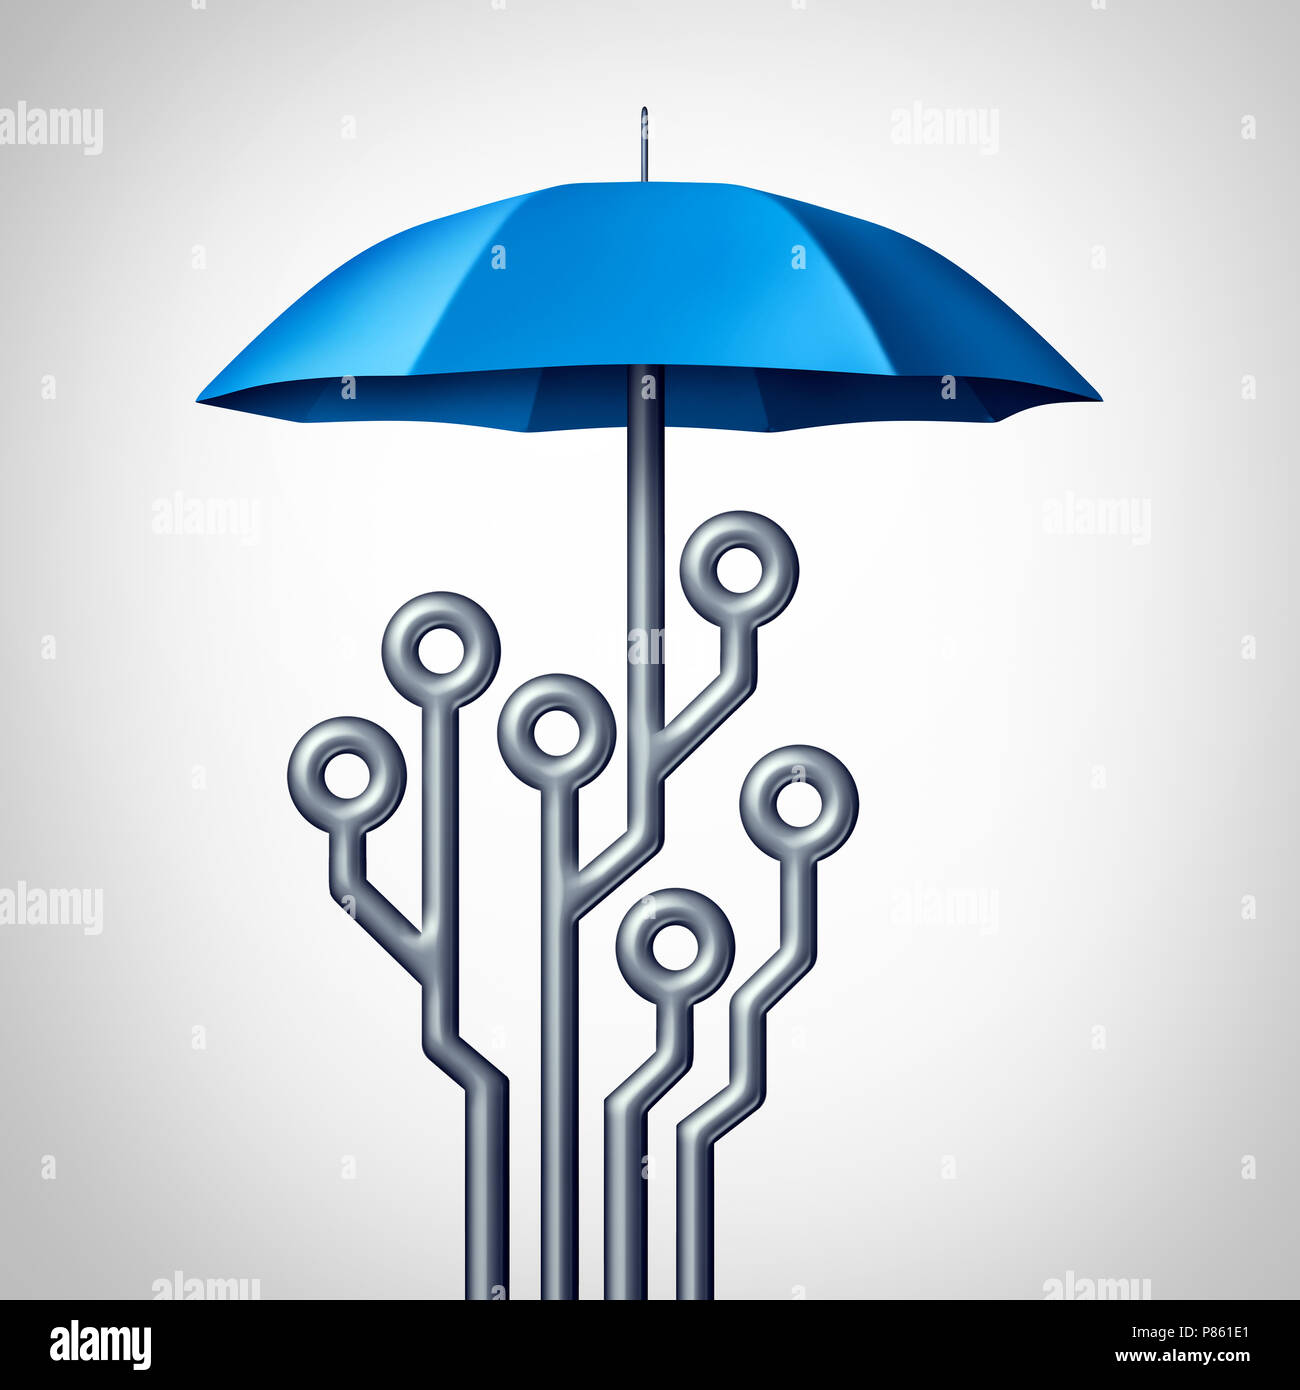 Software Schutz und Antivirus Technologie Sicherheit Schild Symbol wie ein Regenschirm als Computing Schaltung als 3D-Render geprägt. Stockfoto